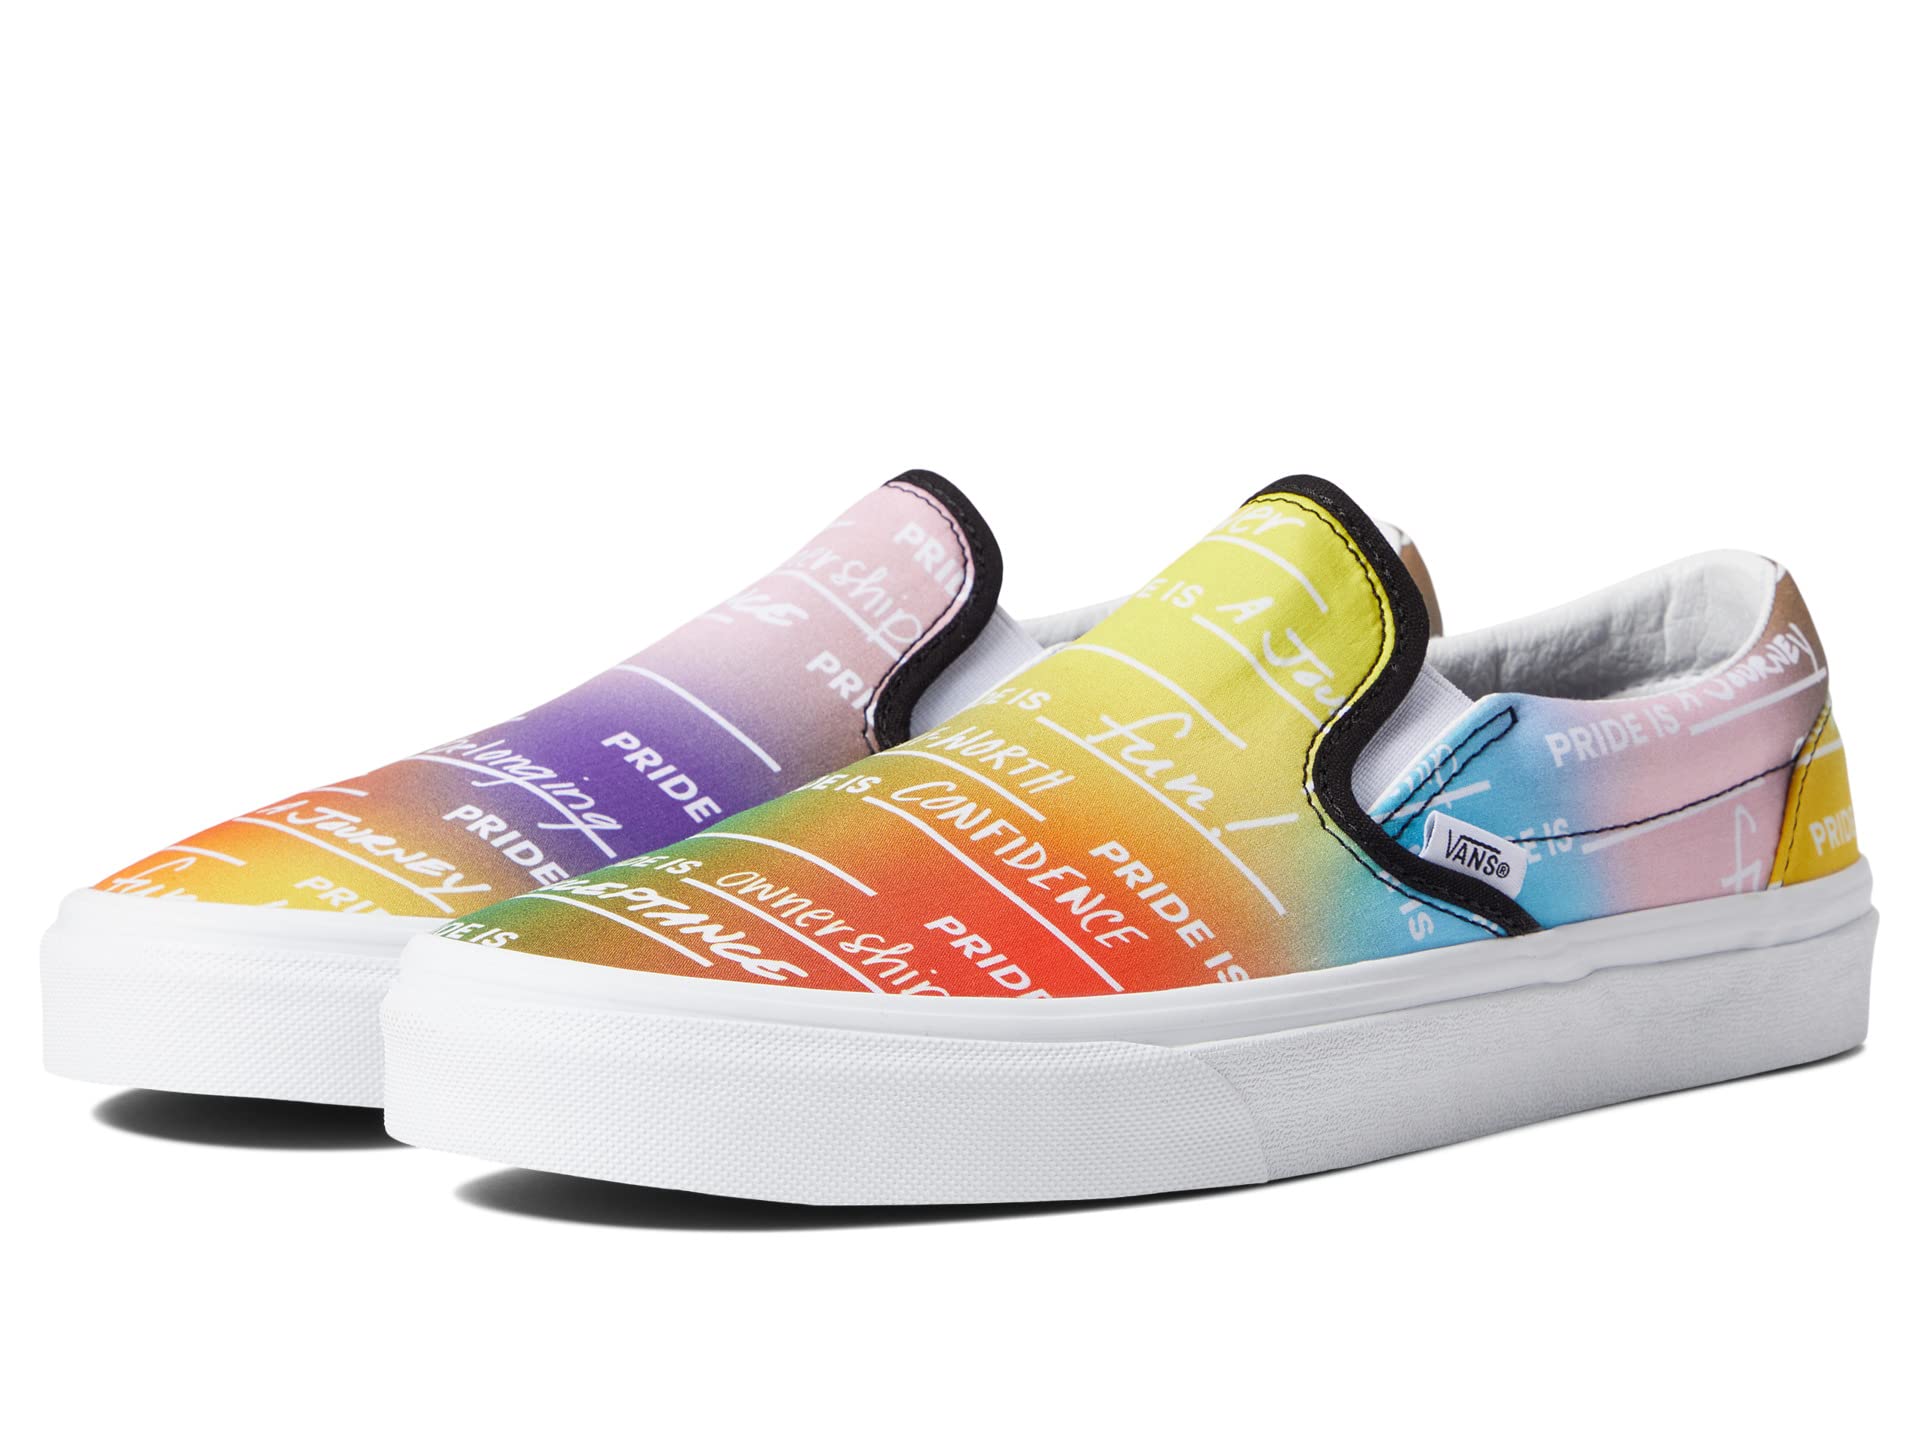 Кеды Vans, Vans X Pride Sneaker Collection кукла classic санни мэдисон 28см желтая с акс rainbow 42684